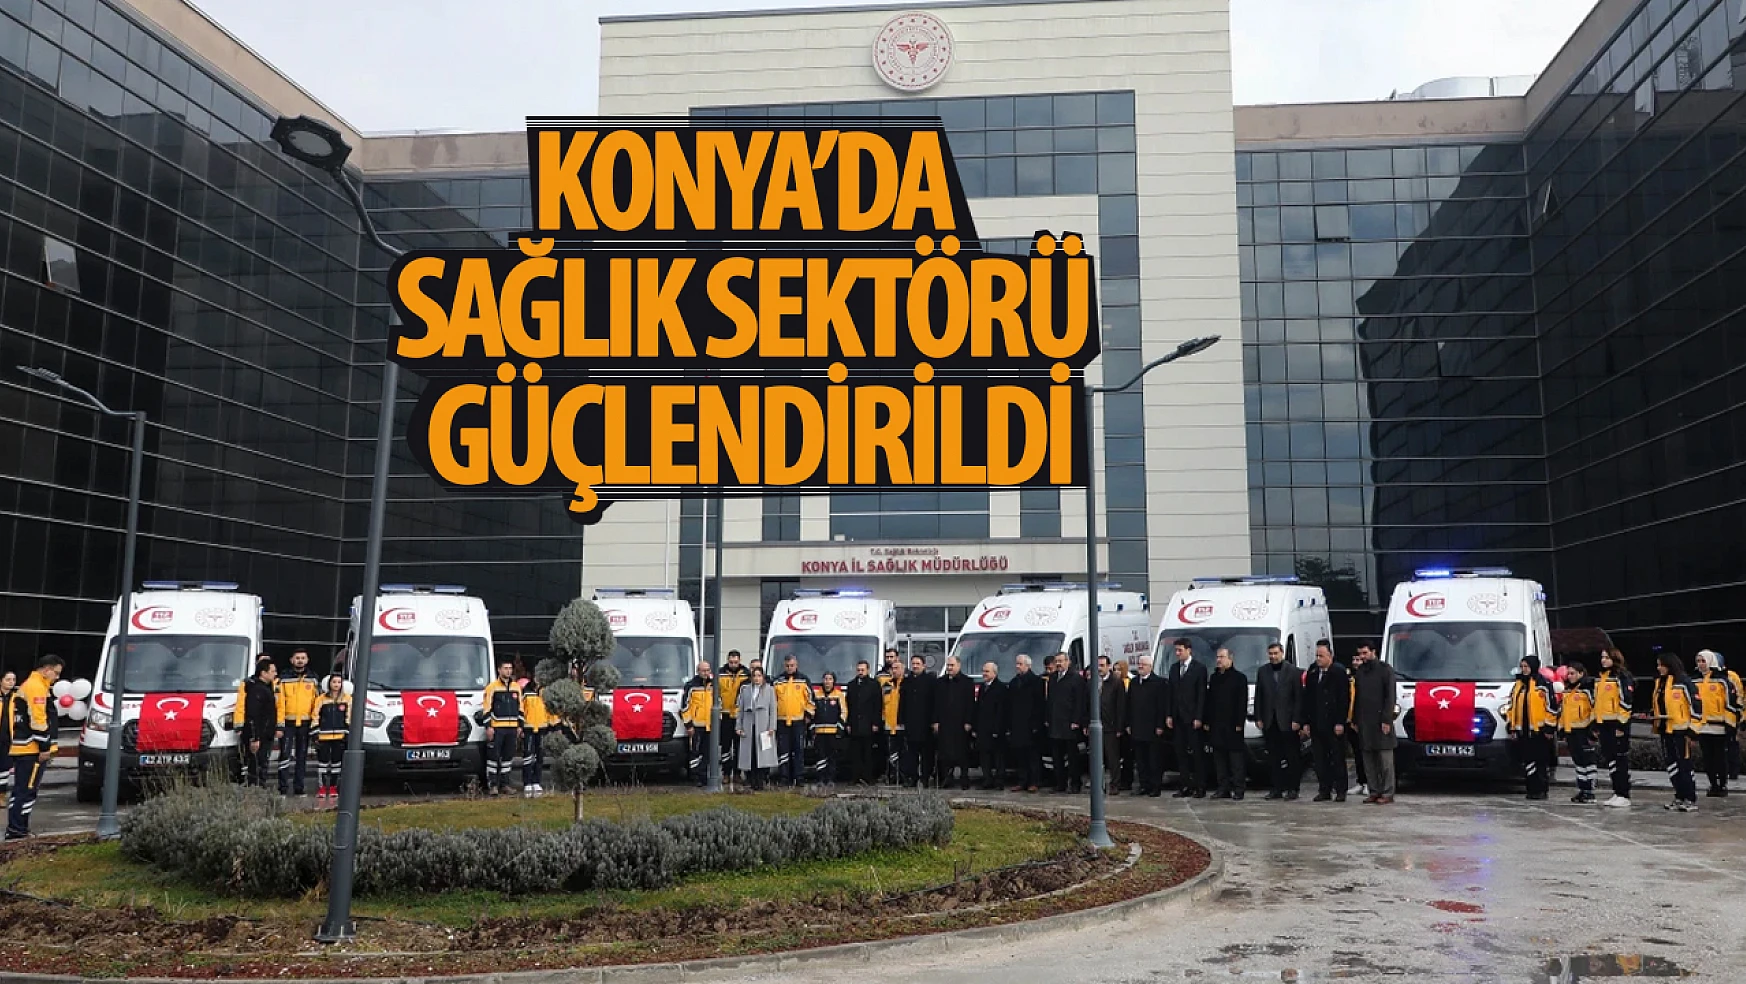 Konya'da sağlık sektörü güçlendirildi!